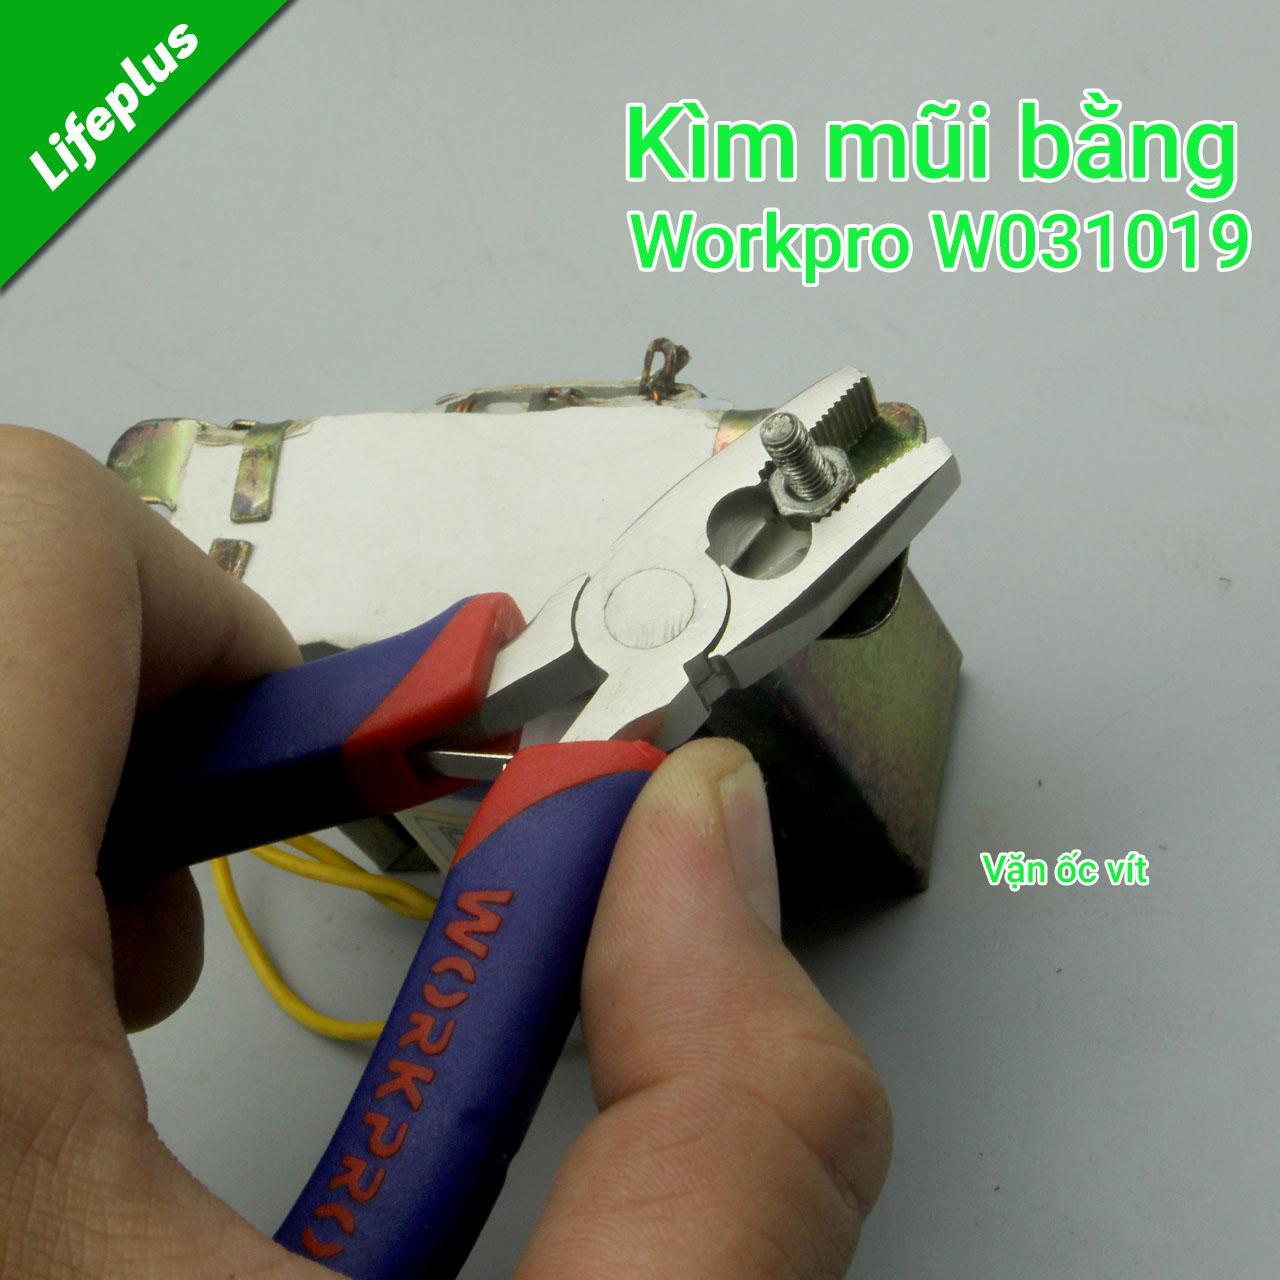 Kìm mũi bằng mini Workpro W031019